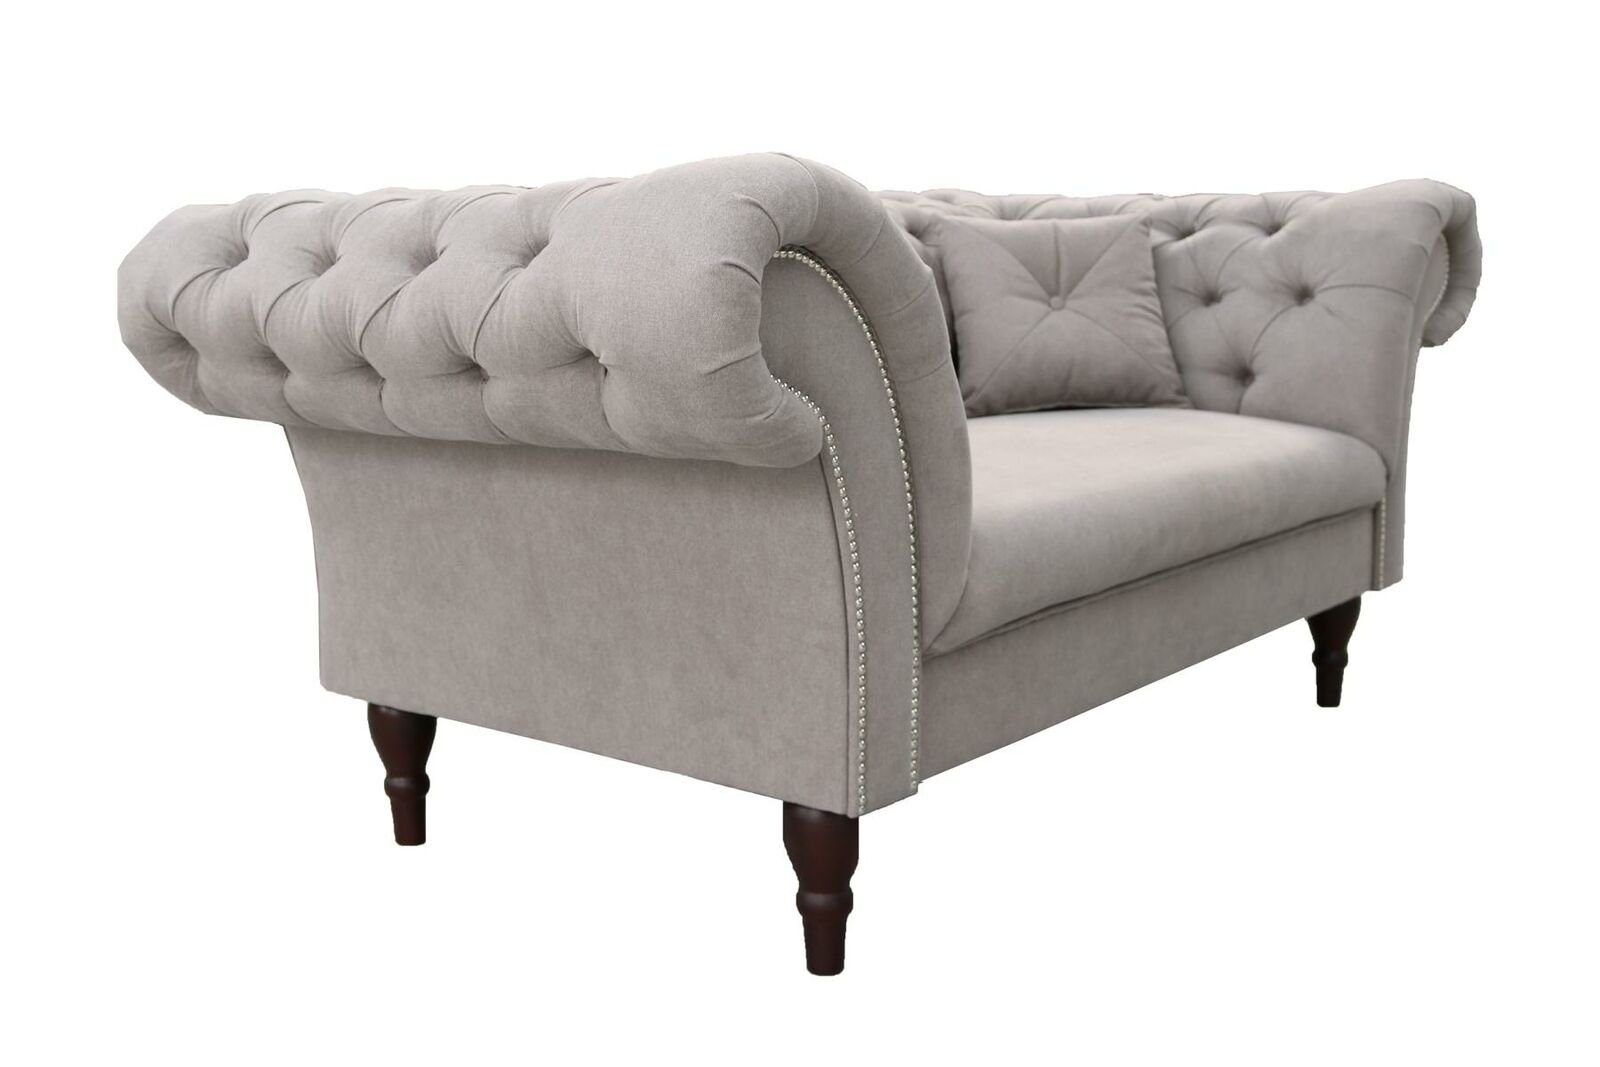 JVmoebel Made Brandneu, 3-er Design Europe Couch Chesterfield in Möbel Luxus Grauer Sofa Dreisitzer